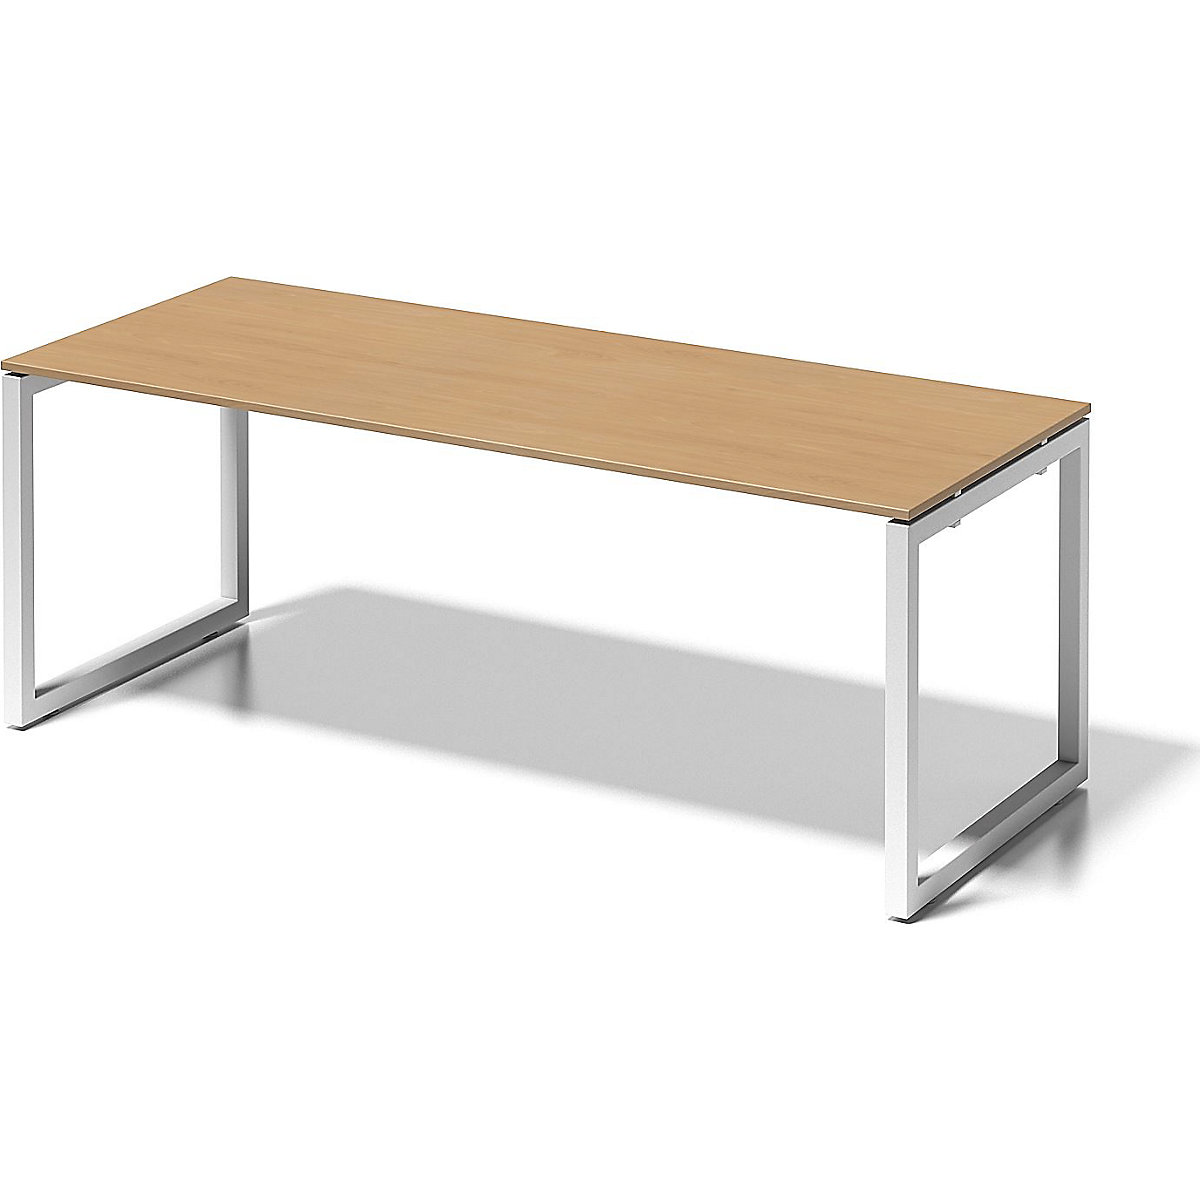 Písací stôl CITO, podstavec v tvare O – BISLEY, v x š x h 740 x 2000 x 800 mm, podstavec biela, doska stola buk-6